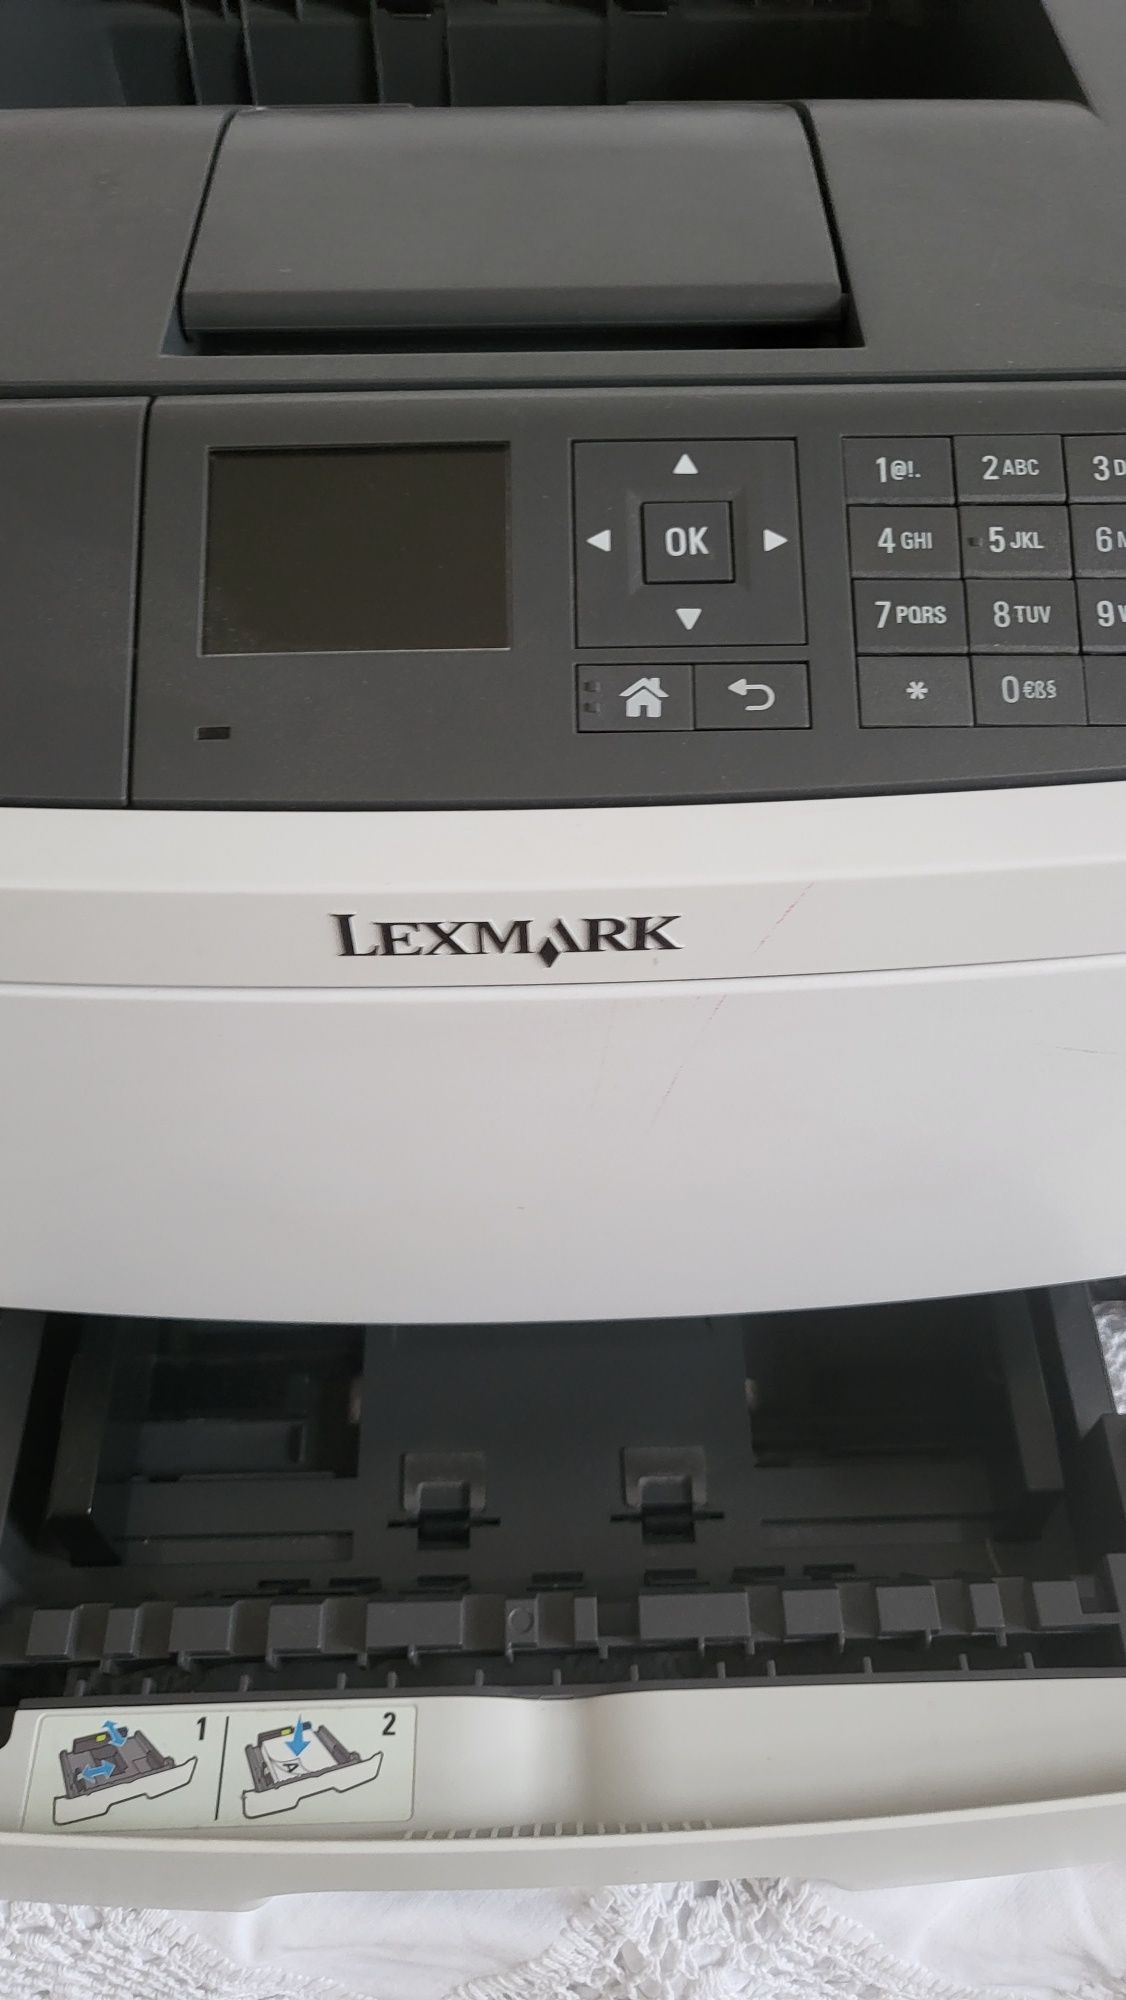 Drukarka jednofunkcyjna laserowa (mono) Lexmark MS415dn - drukuje ale